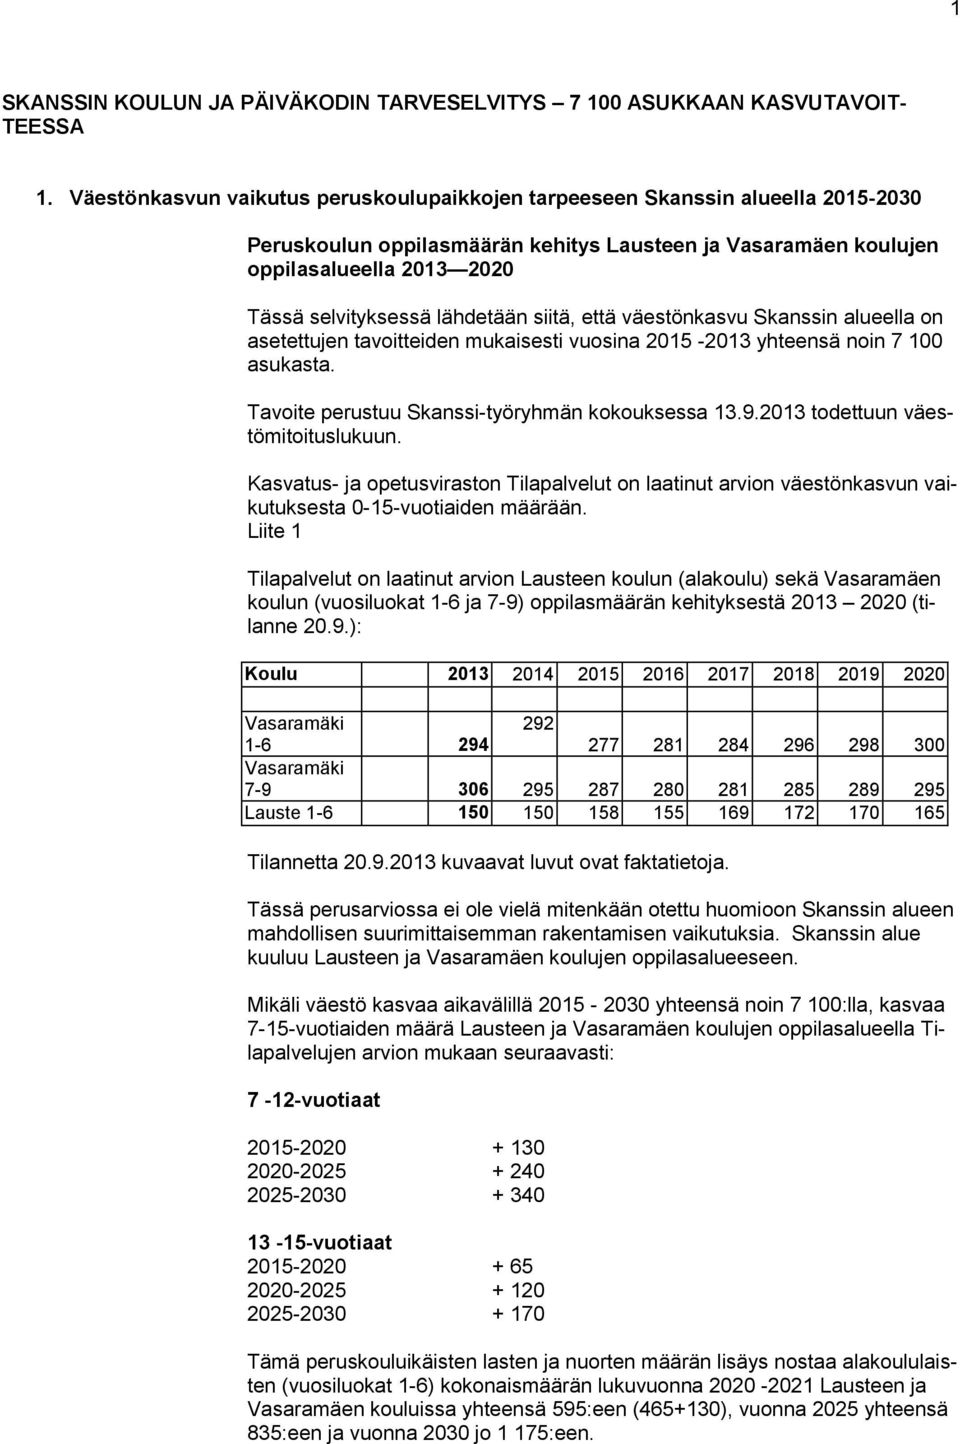 lähdetään siitä, että väestönkasvu Skanssin alueella on asetettujen tavoitteiden mukaisesti vuosina 2015-2013 yhteensä noin 7 100 asukasta. Tavoite perustuu Skanssi-työryhmän kokouksessa 13.9.